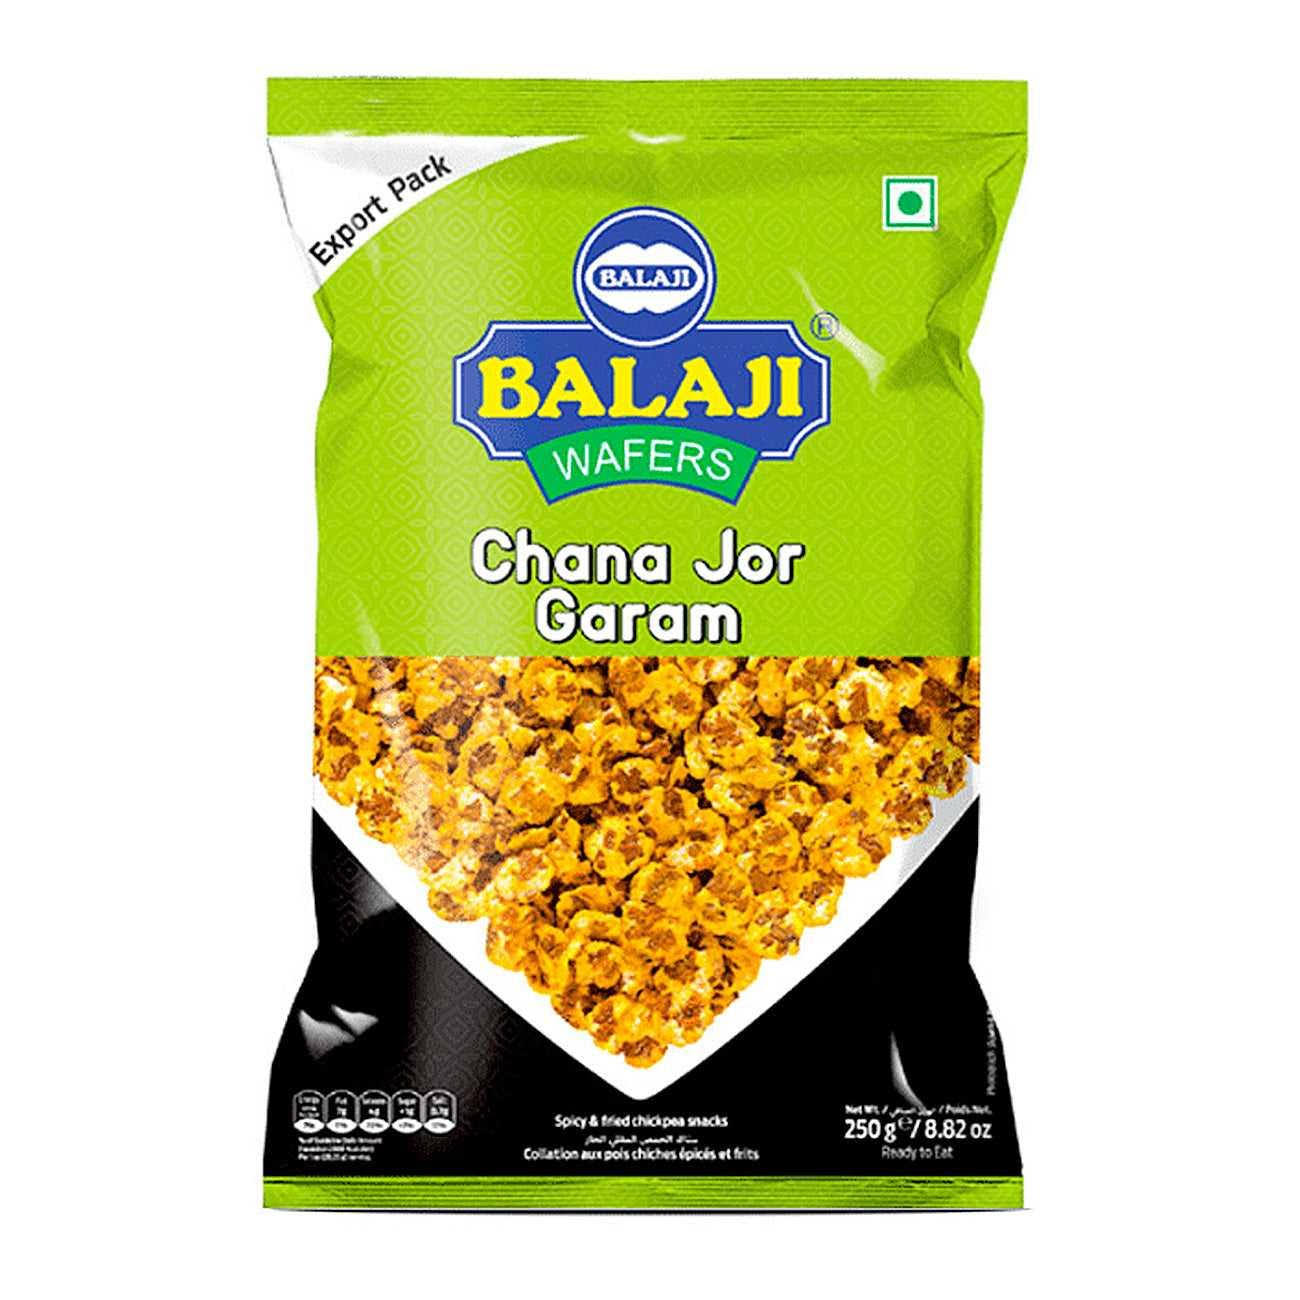 Balaji Chana Jor Garam 250g